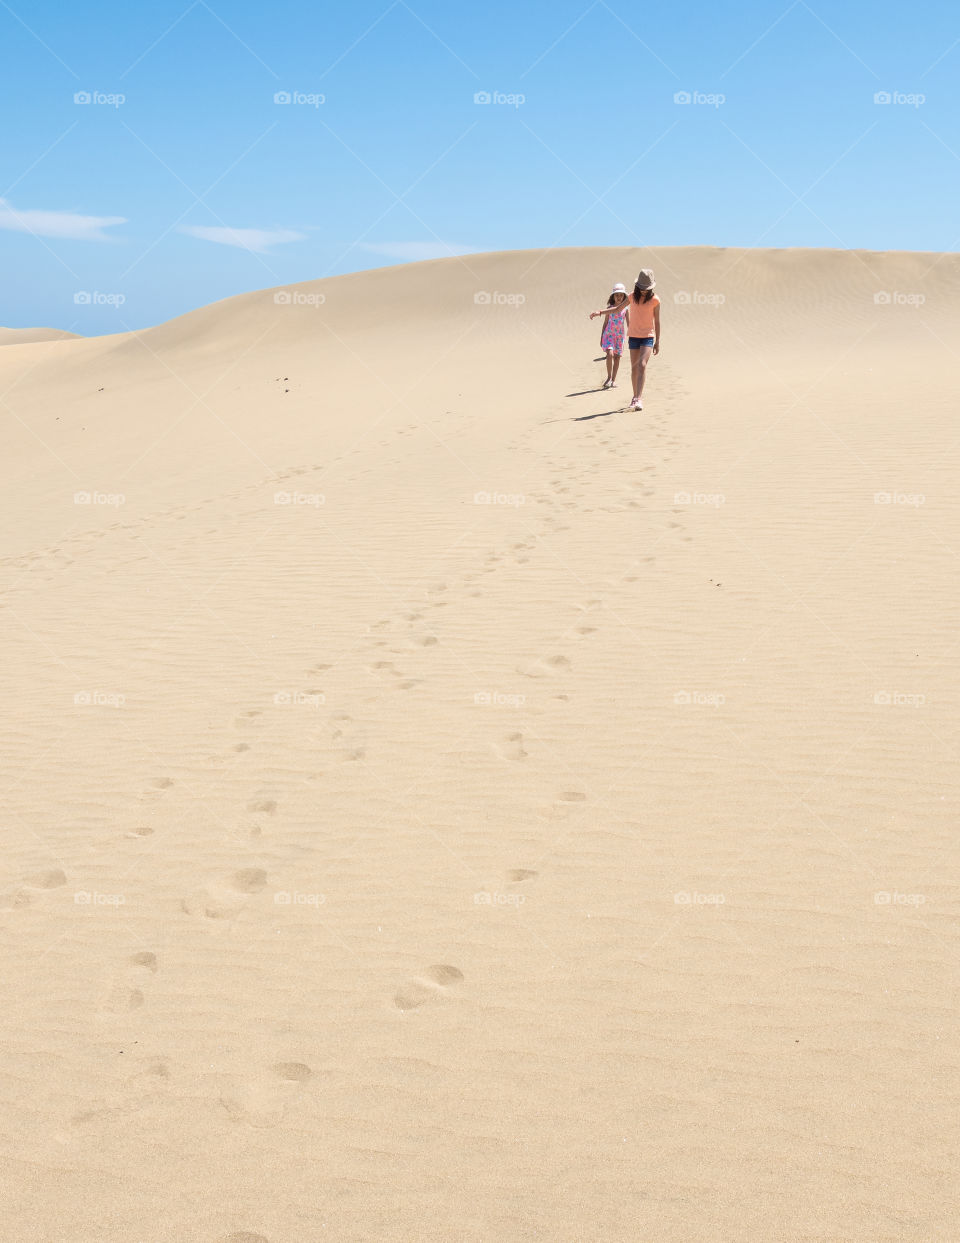 Walking in the dune 3